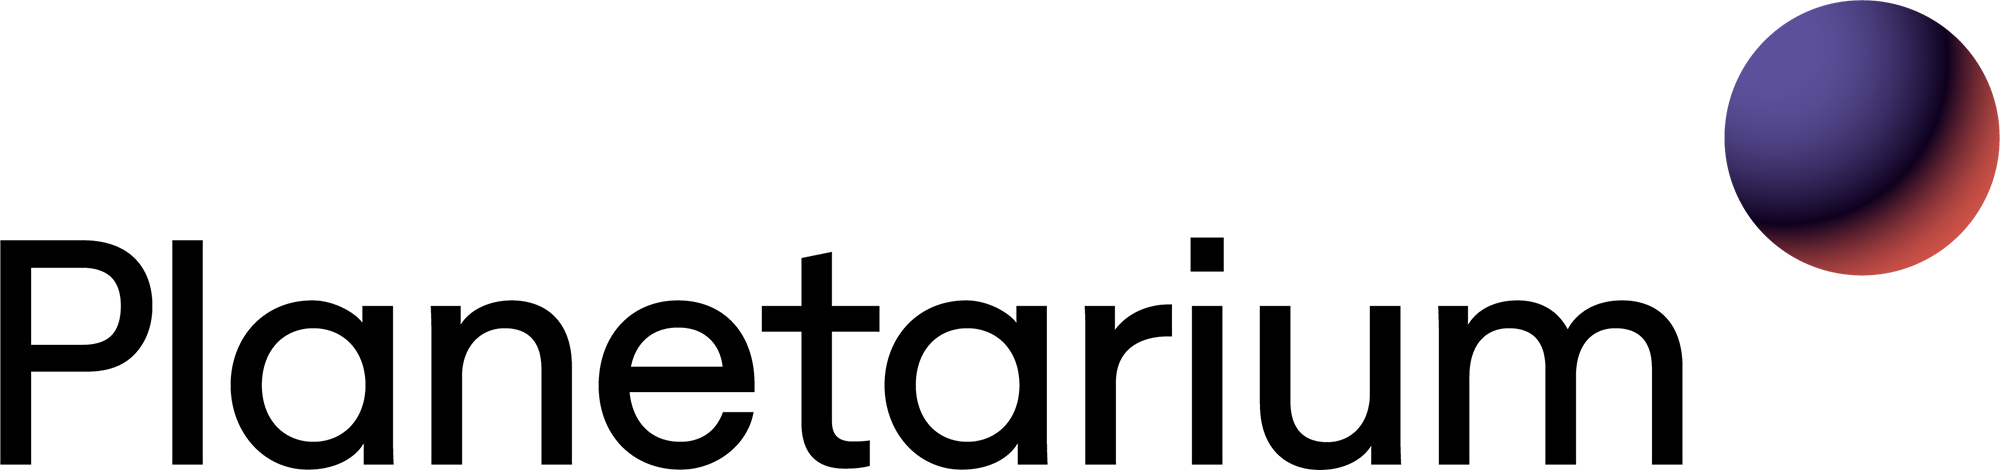 Logo af planetarium i sort